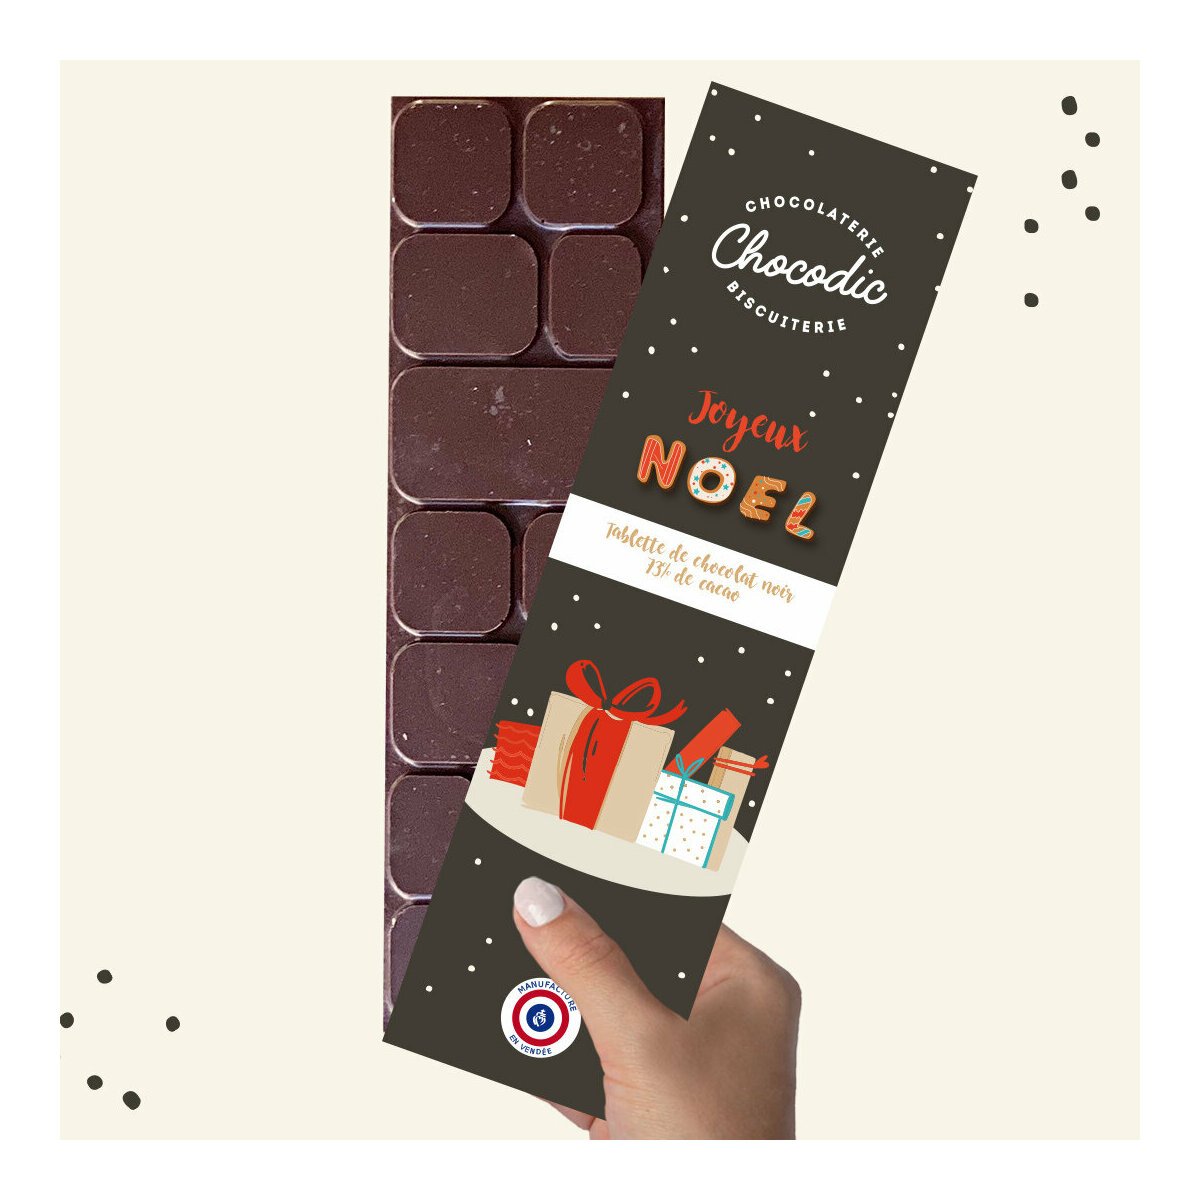 Box Cadeau Chocodic de Noël avec 4 Gourmandises Chocolat Biscuits et Caramel